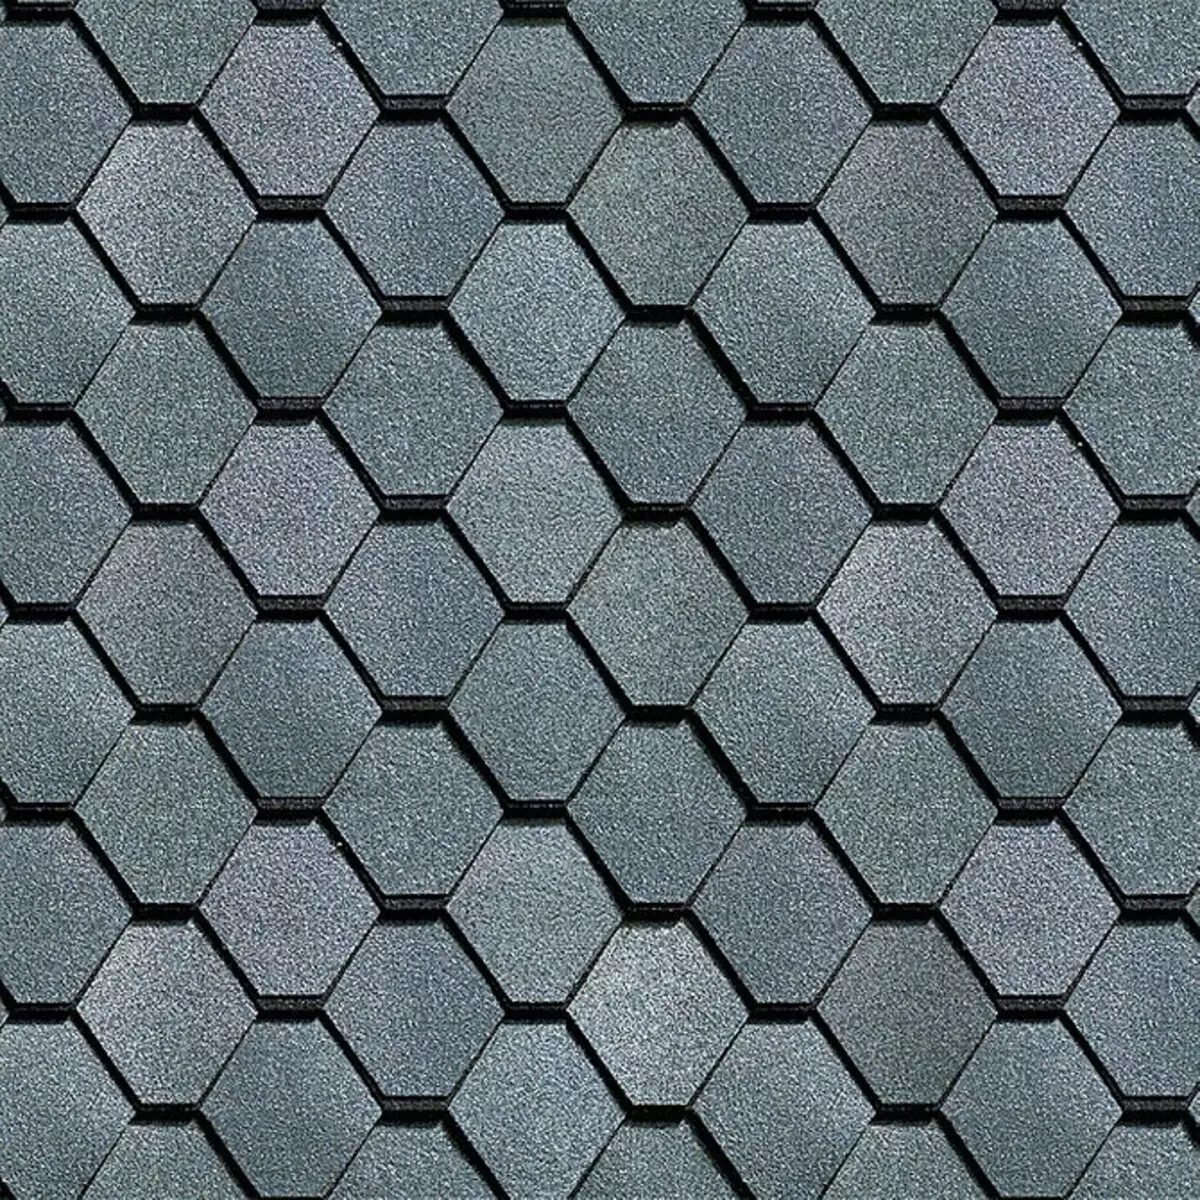 Bitumen Tile: yadda za a guji kurakuran shigarwa 11951_15